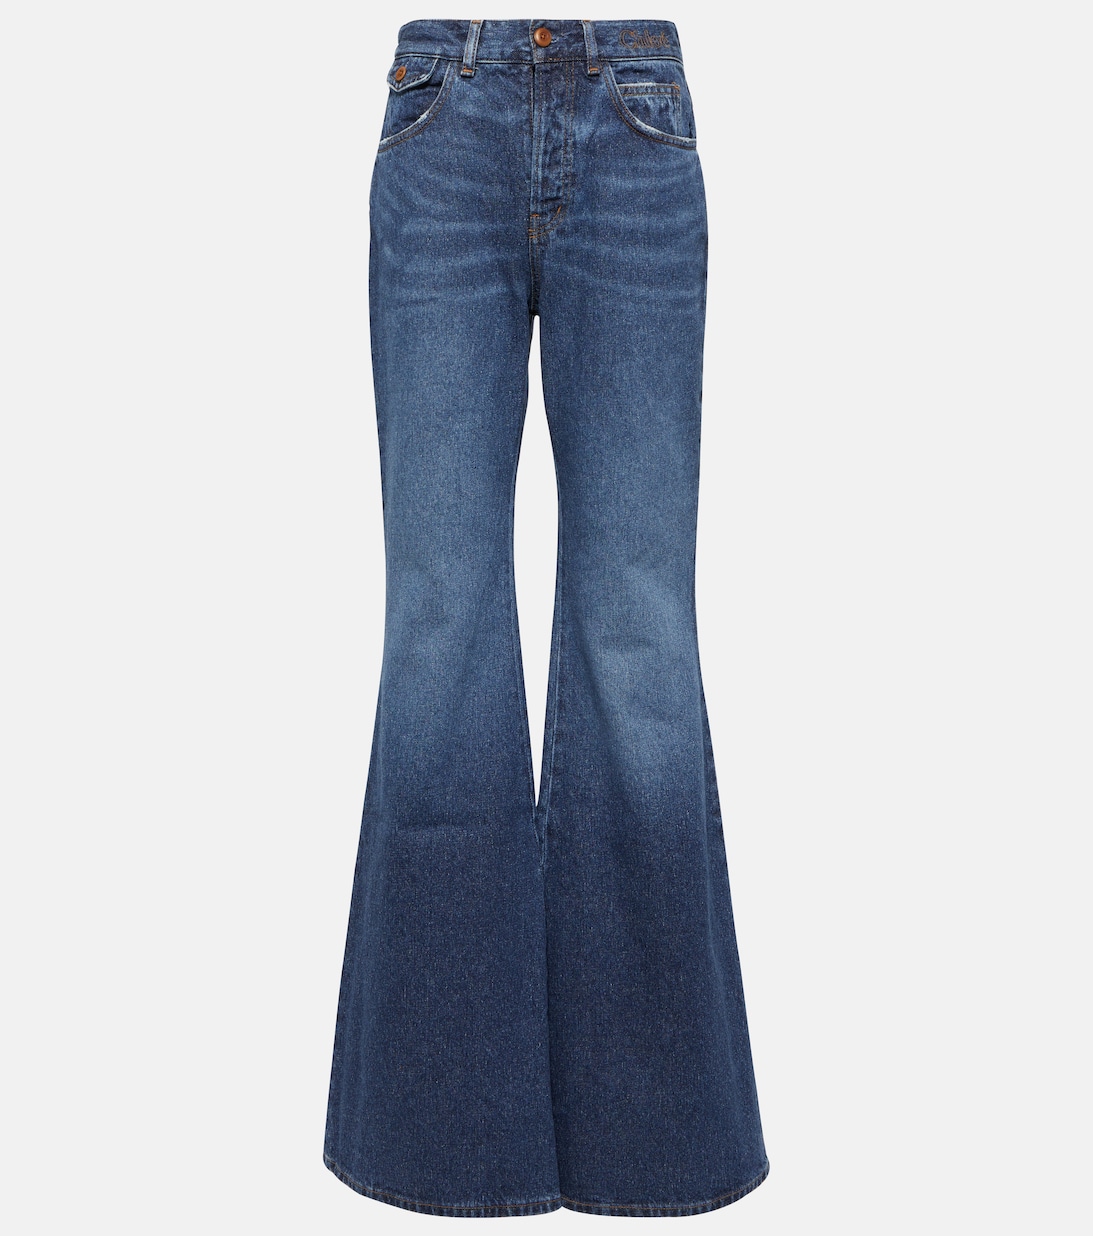 Расклешенные джинсы с высокой посадкой CHLOÉ, синий джинсы paige laurel canyon расклешенные с высокой посадкой синий